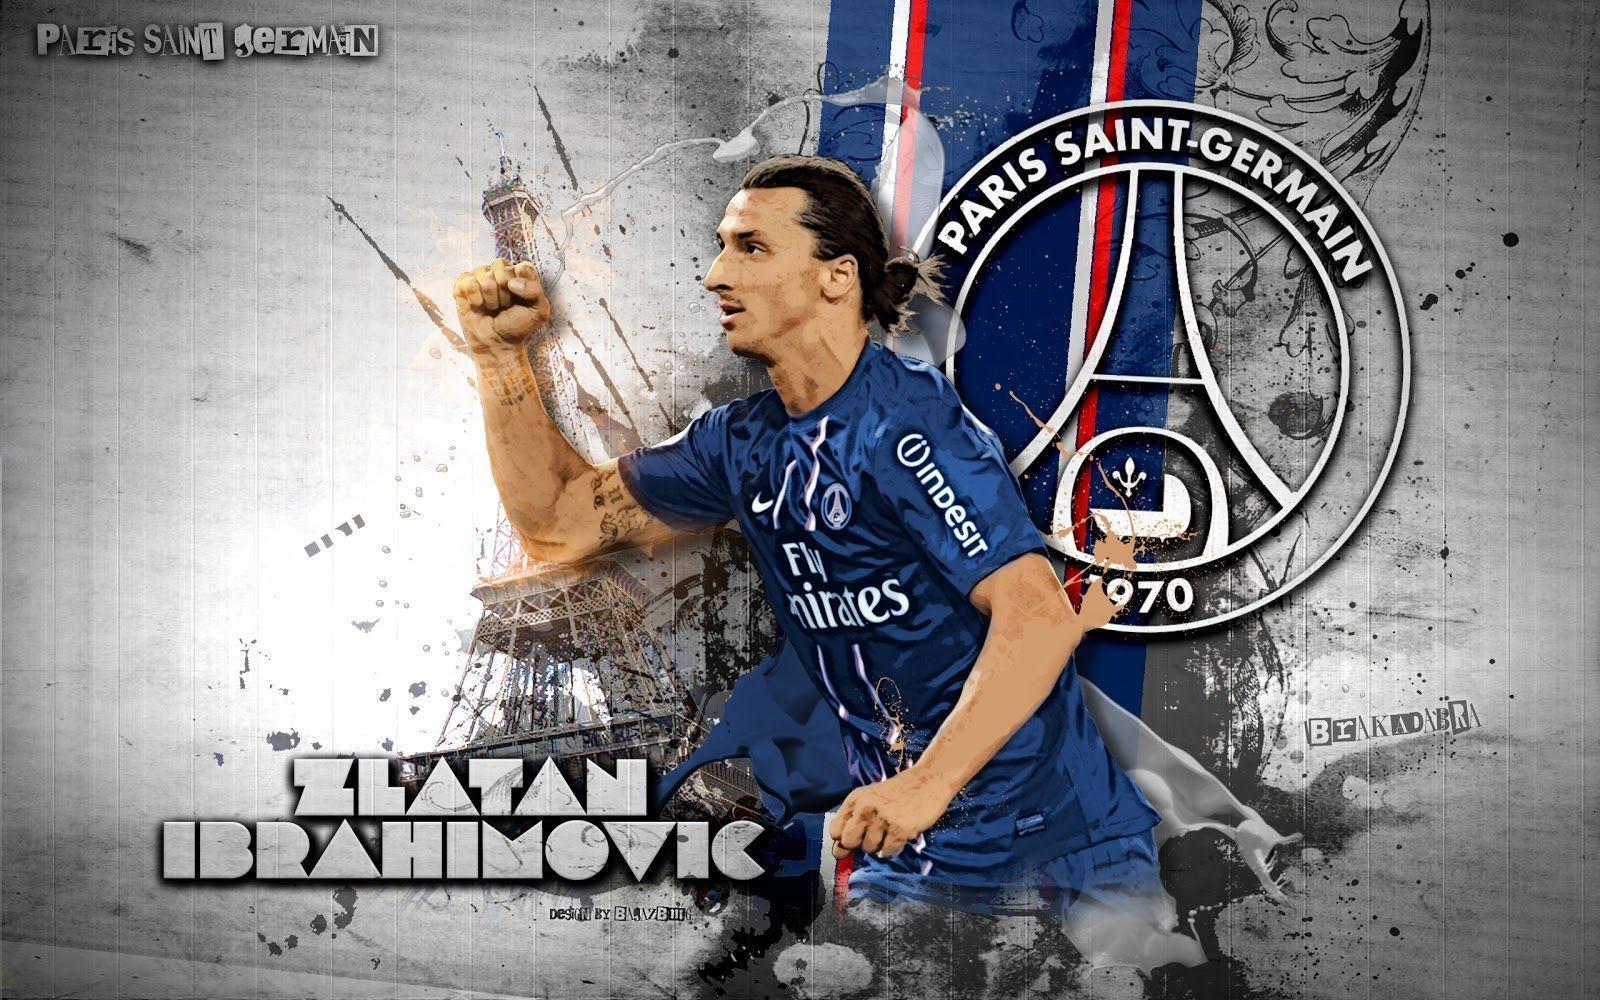 Zlatan Ibrahimovic Football Wallpaper